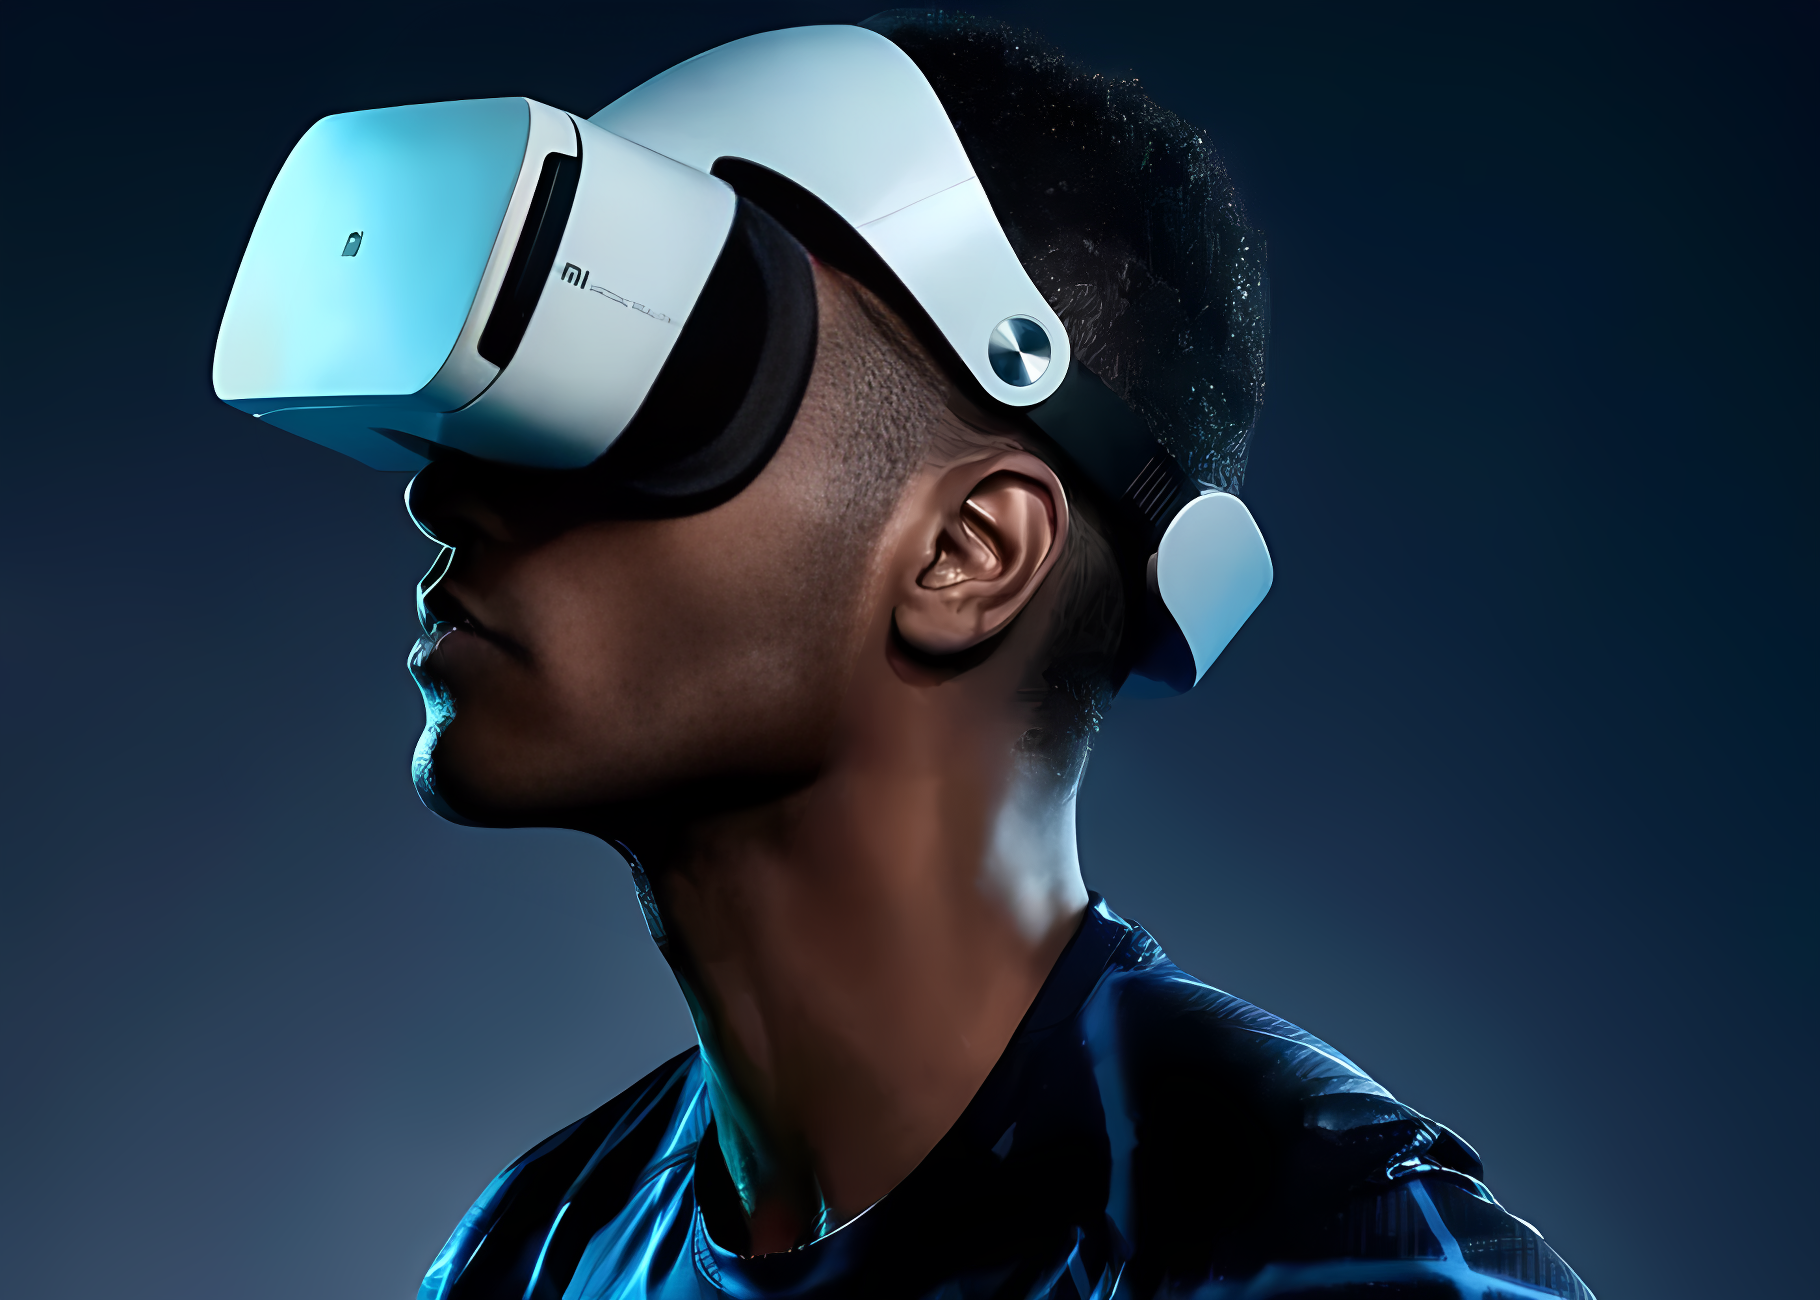 图片展示了一位男士戴着虚拟现实头盔，侧脸朝右，背景为深蓝色调，科技感十足。